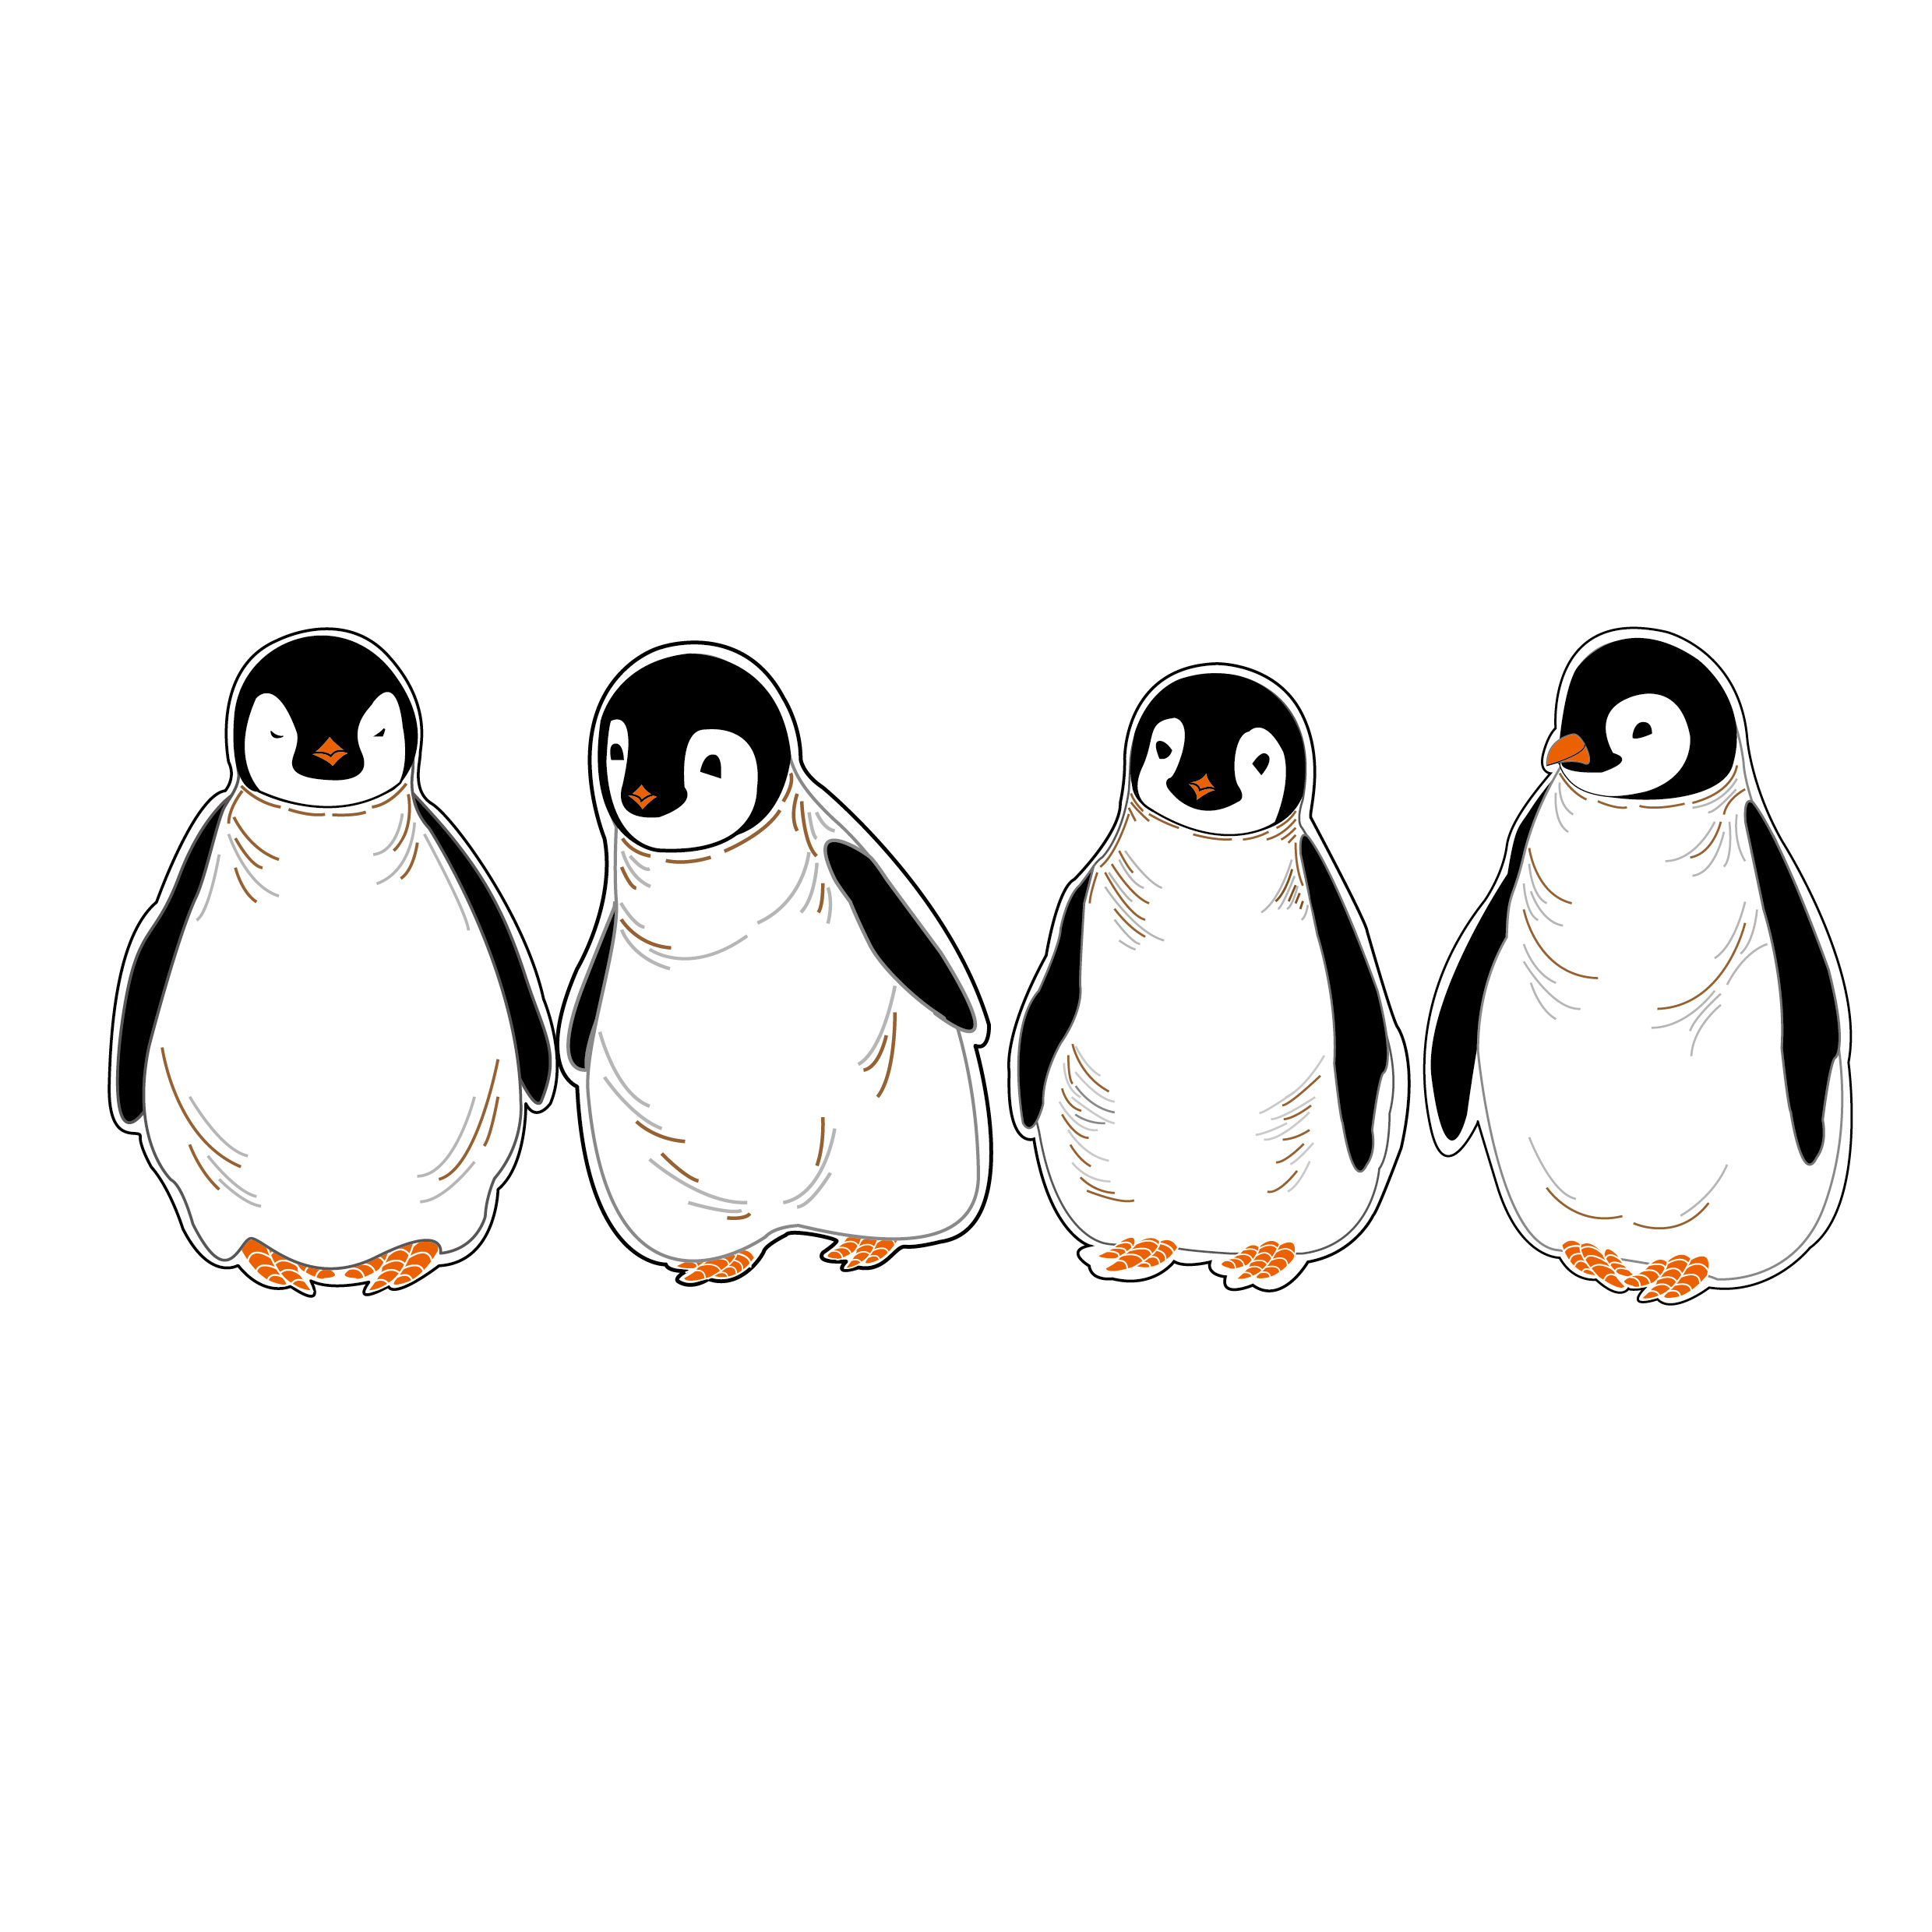 企鹅的简笔画 小企鹅怎么画简笔画 - 第 2 - 水彩迷